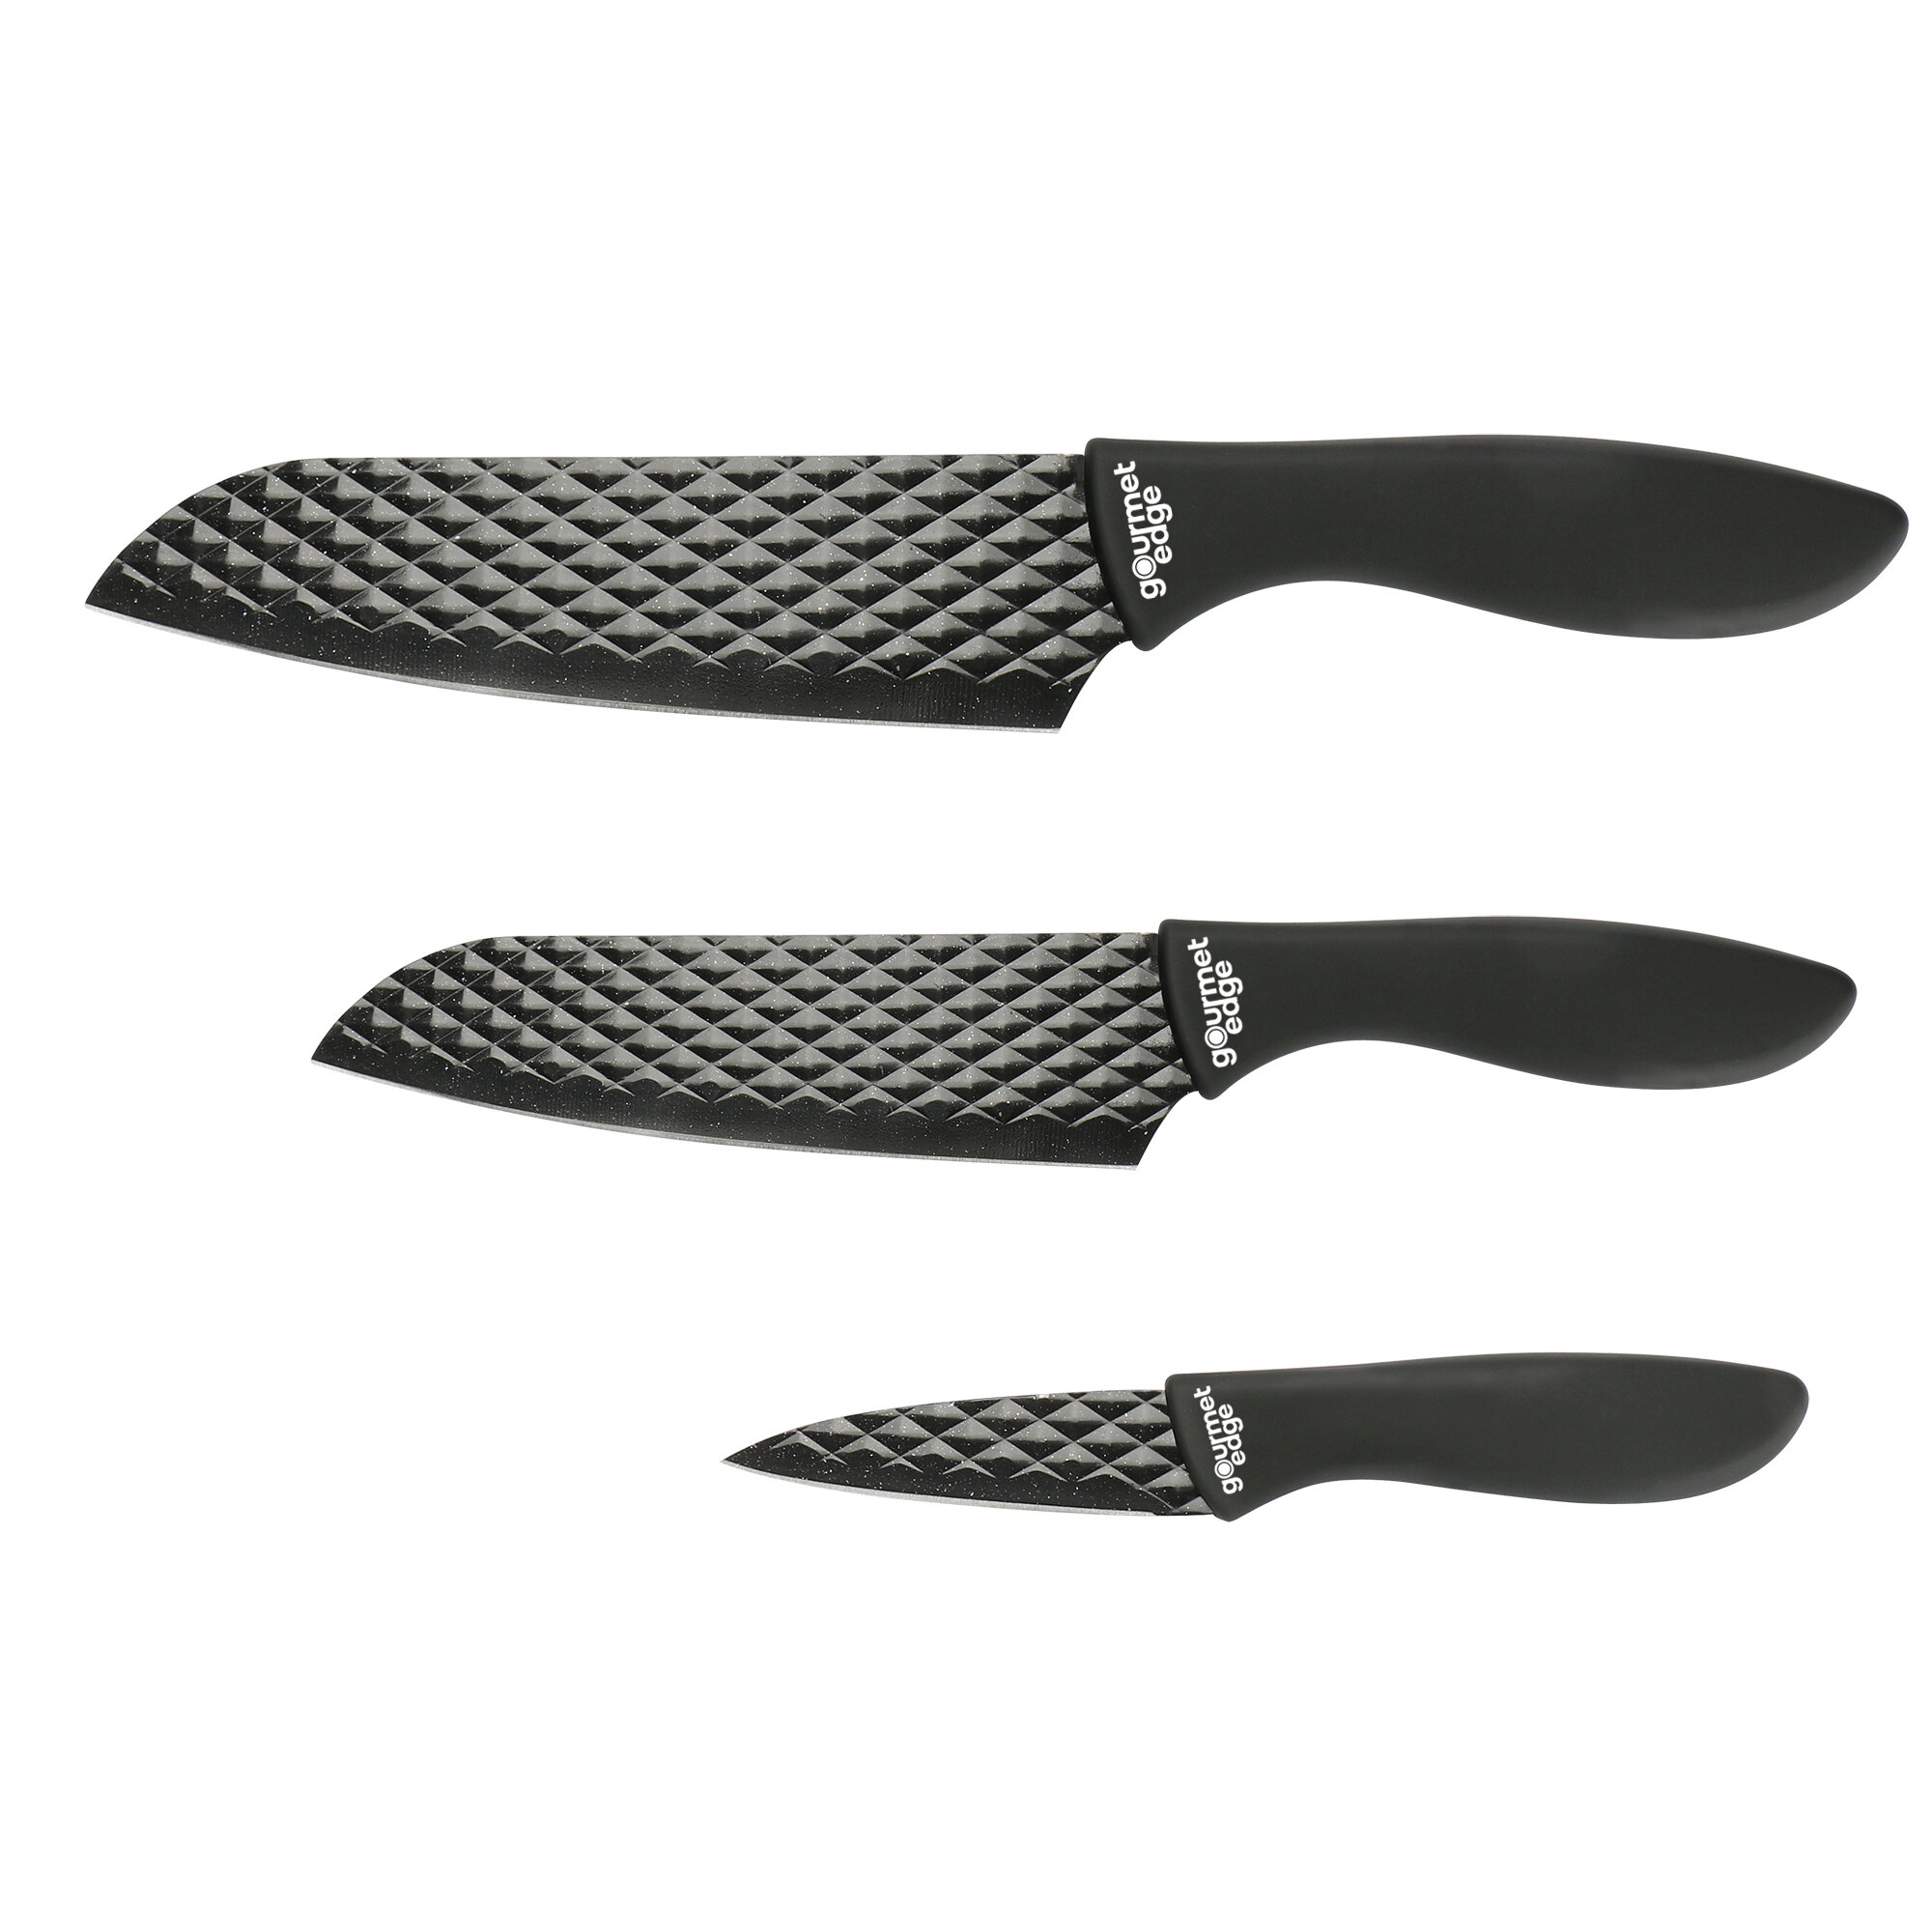 https://assets.wfcdn.com/im/41811708/compr-r85/1504/150409481/gourmet-edge-3-piece-high-carbon-stainless-steel-assorted-knife-set.jpg